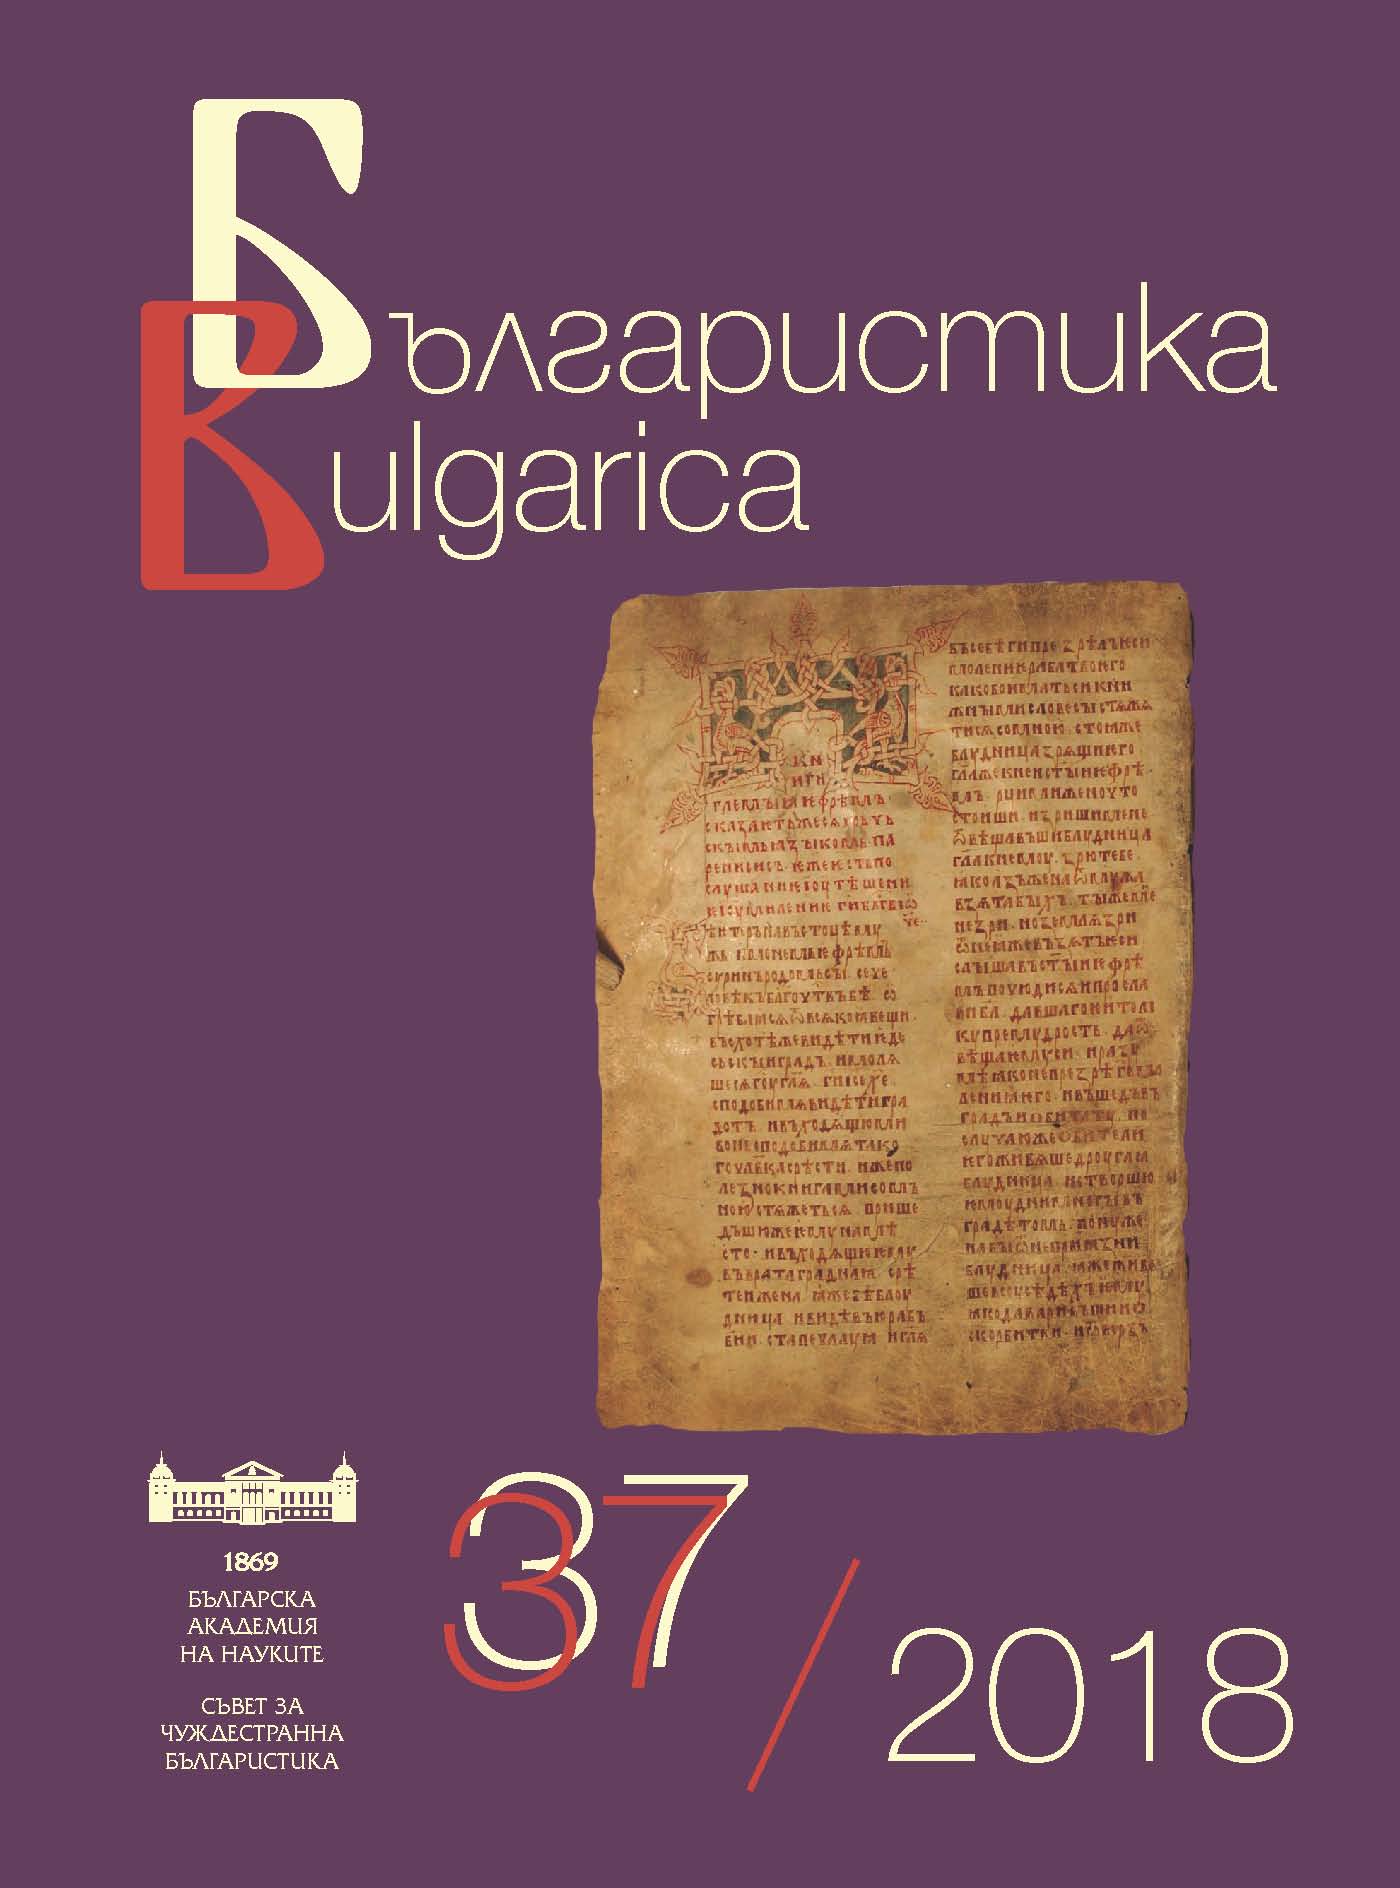 Речник на народната духовна култура на българите